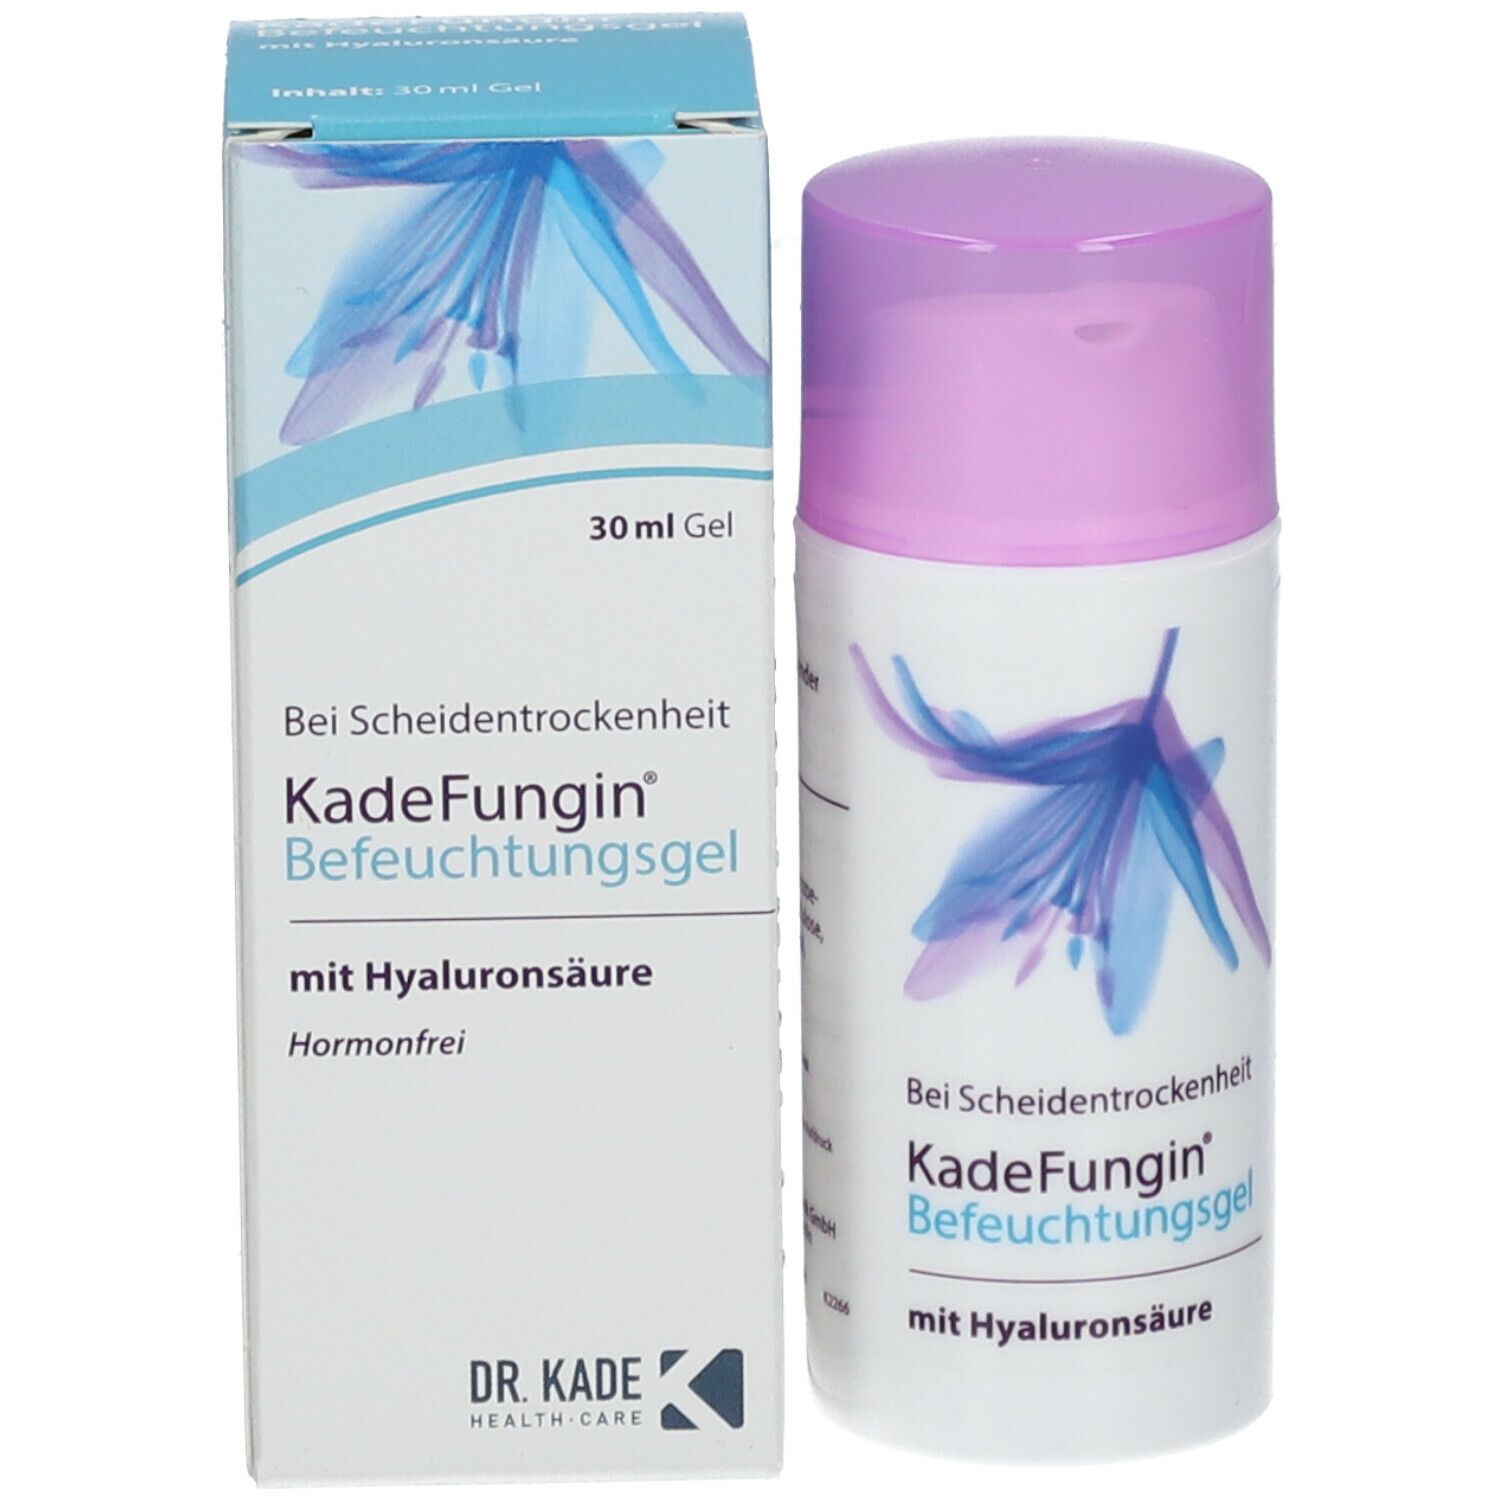 KadeFungin® Befeuchtungsgel